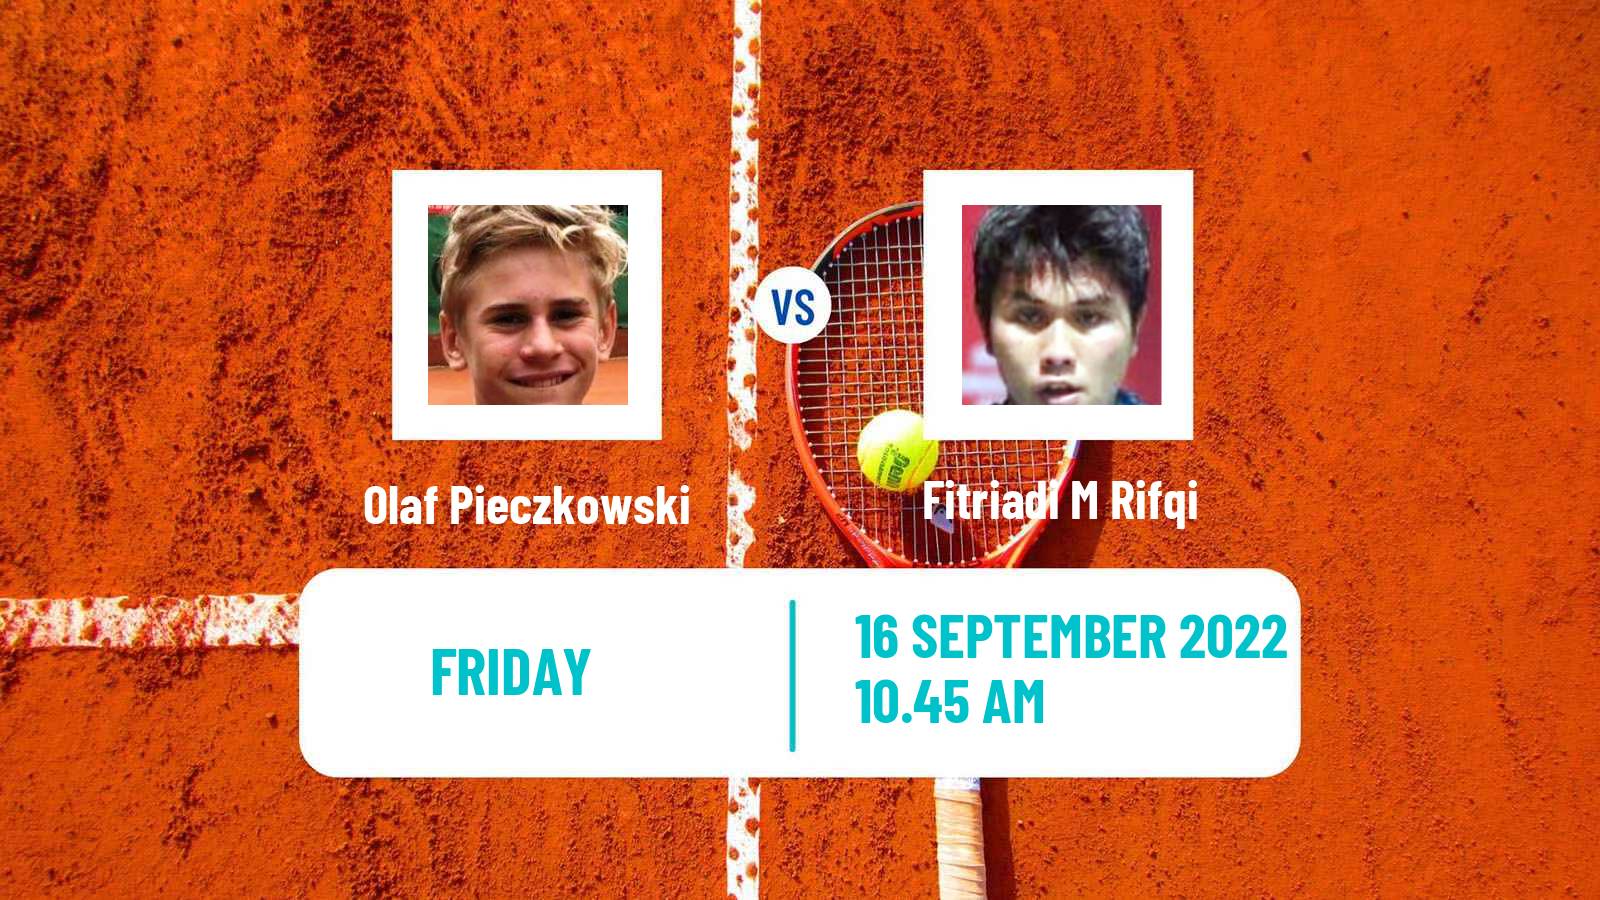 Tennis Davis Cup World Group II Olaf Pieczkowski - M Rifqi Fitriadi